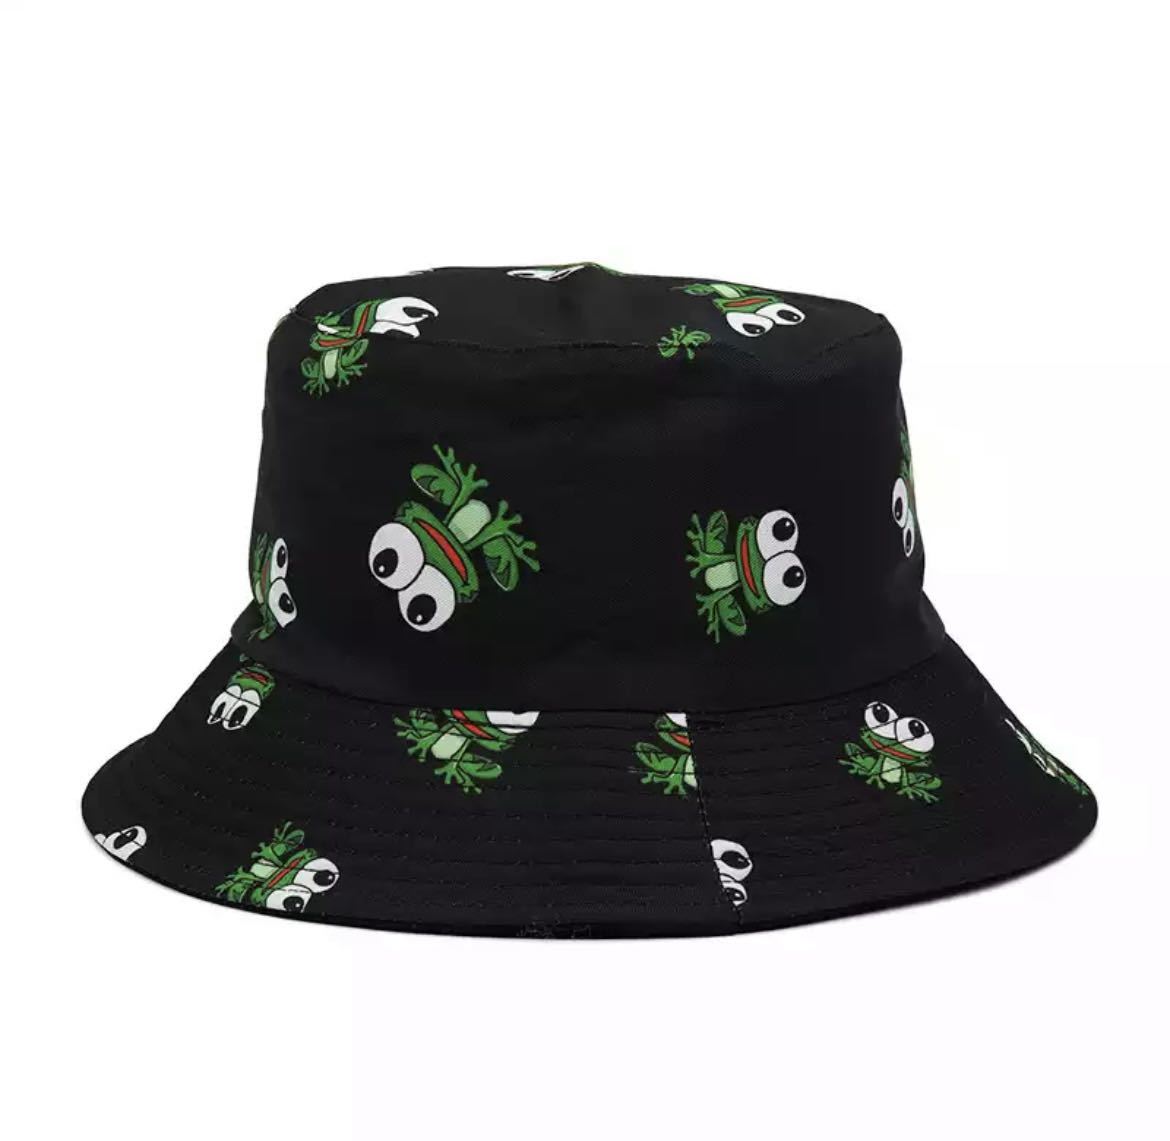 バケットハット 帽子 ハット キャップ ファッション アクセサリー 小物 ユニセックス 蛙 カエル 2580_画像1